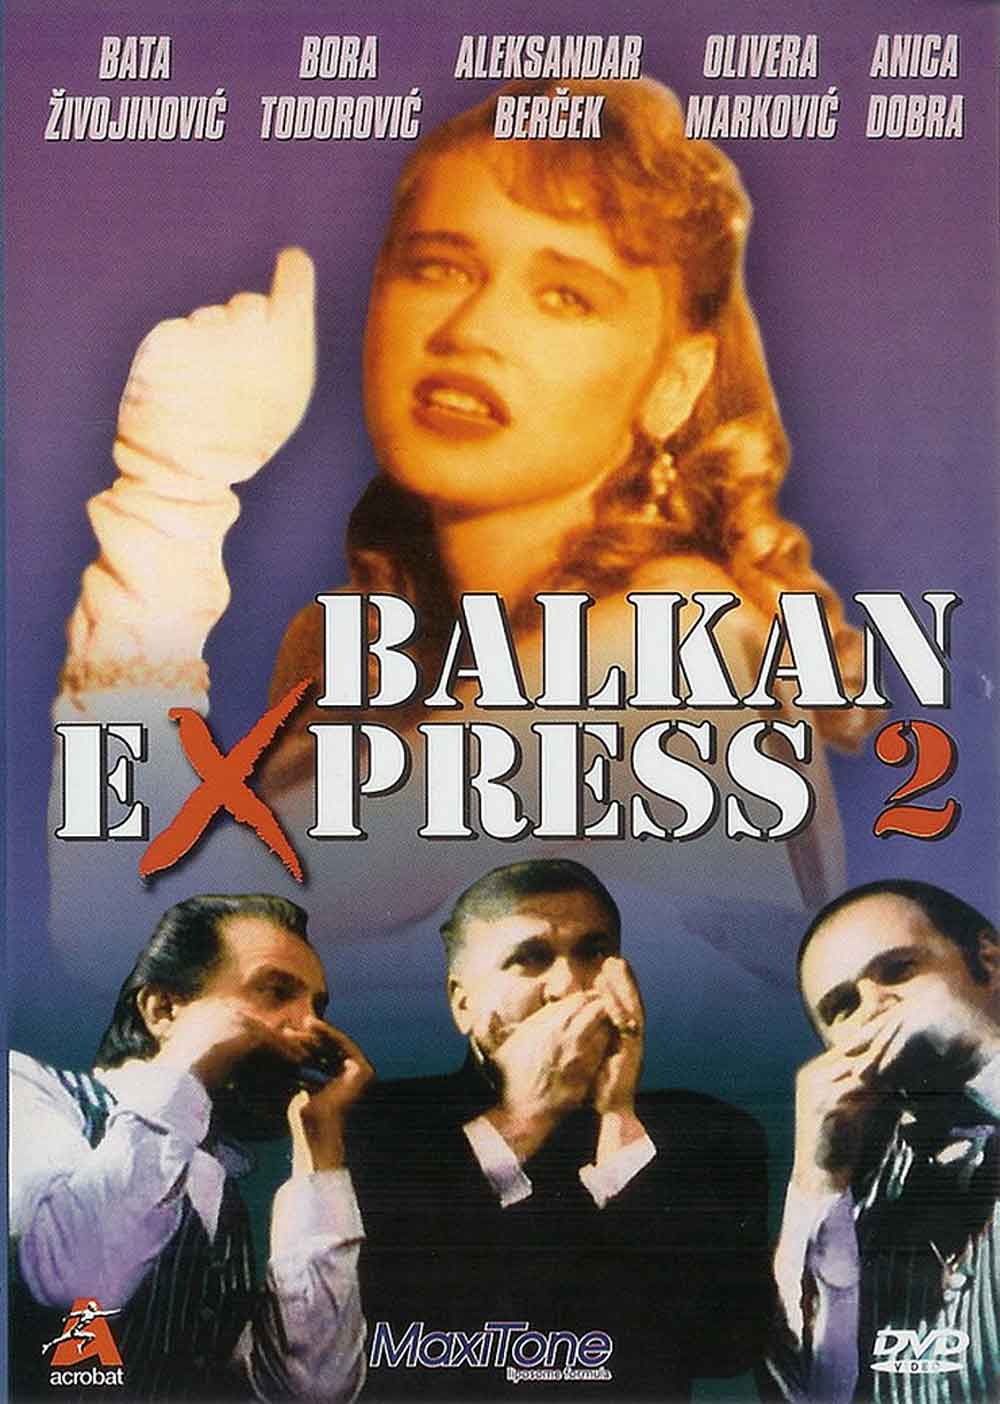 Смотреть фильм Балканский экспресс 2 1989 года онлайн